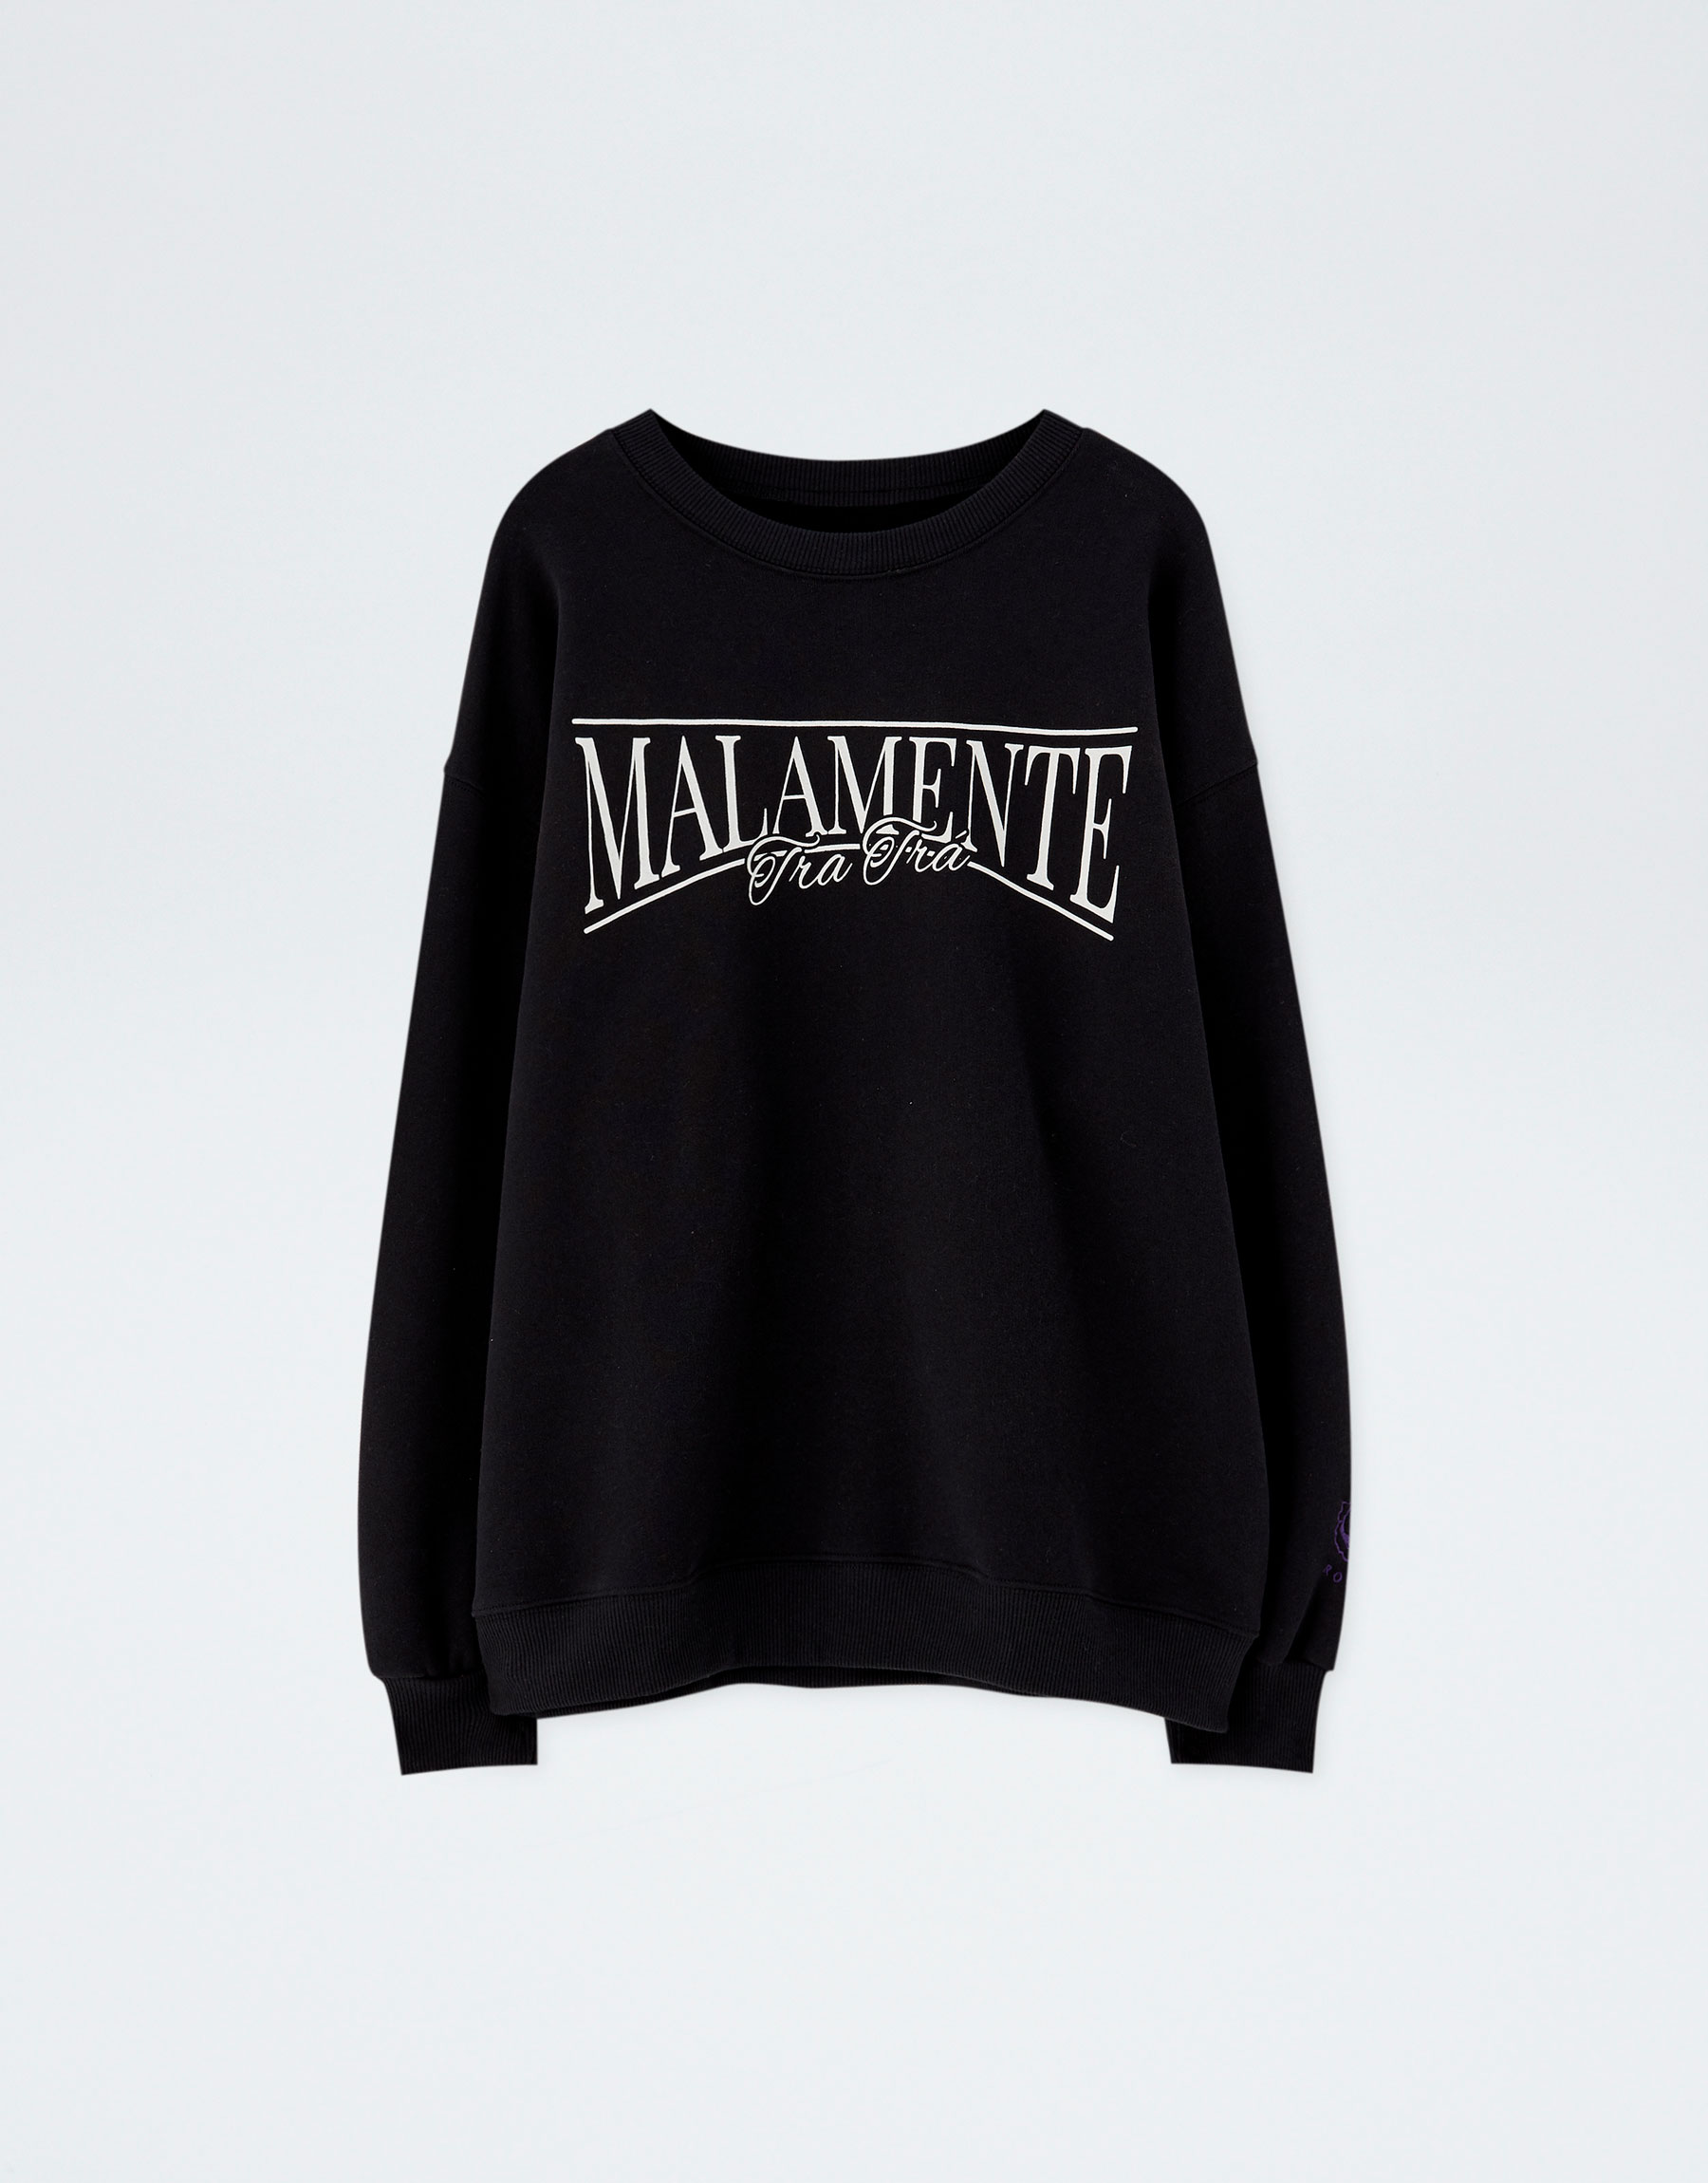 Pull & Bear - by "Malamente" sweatshirt